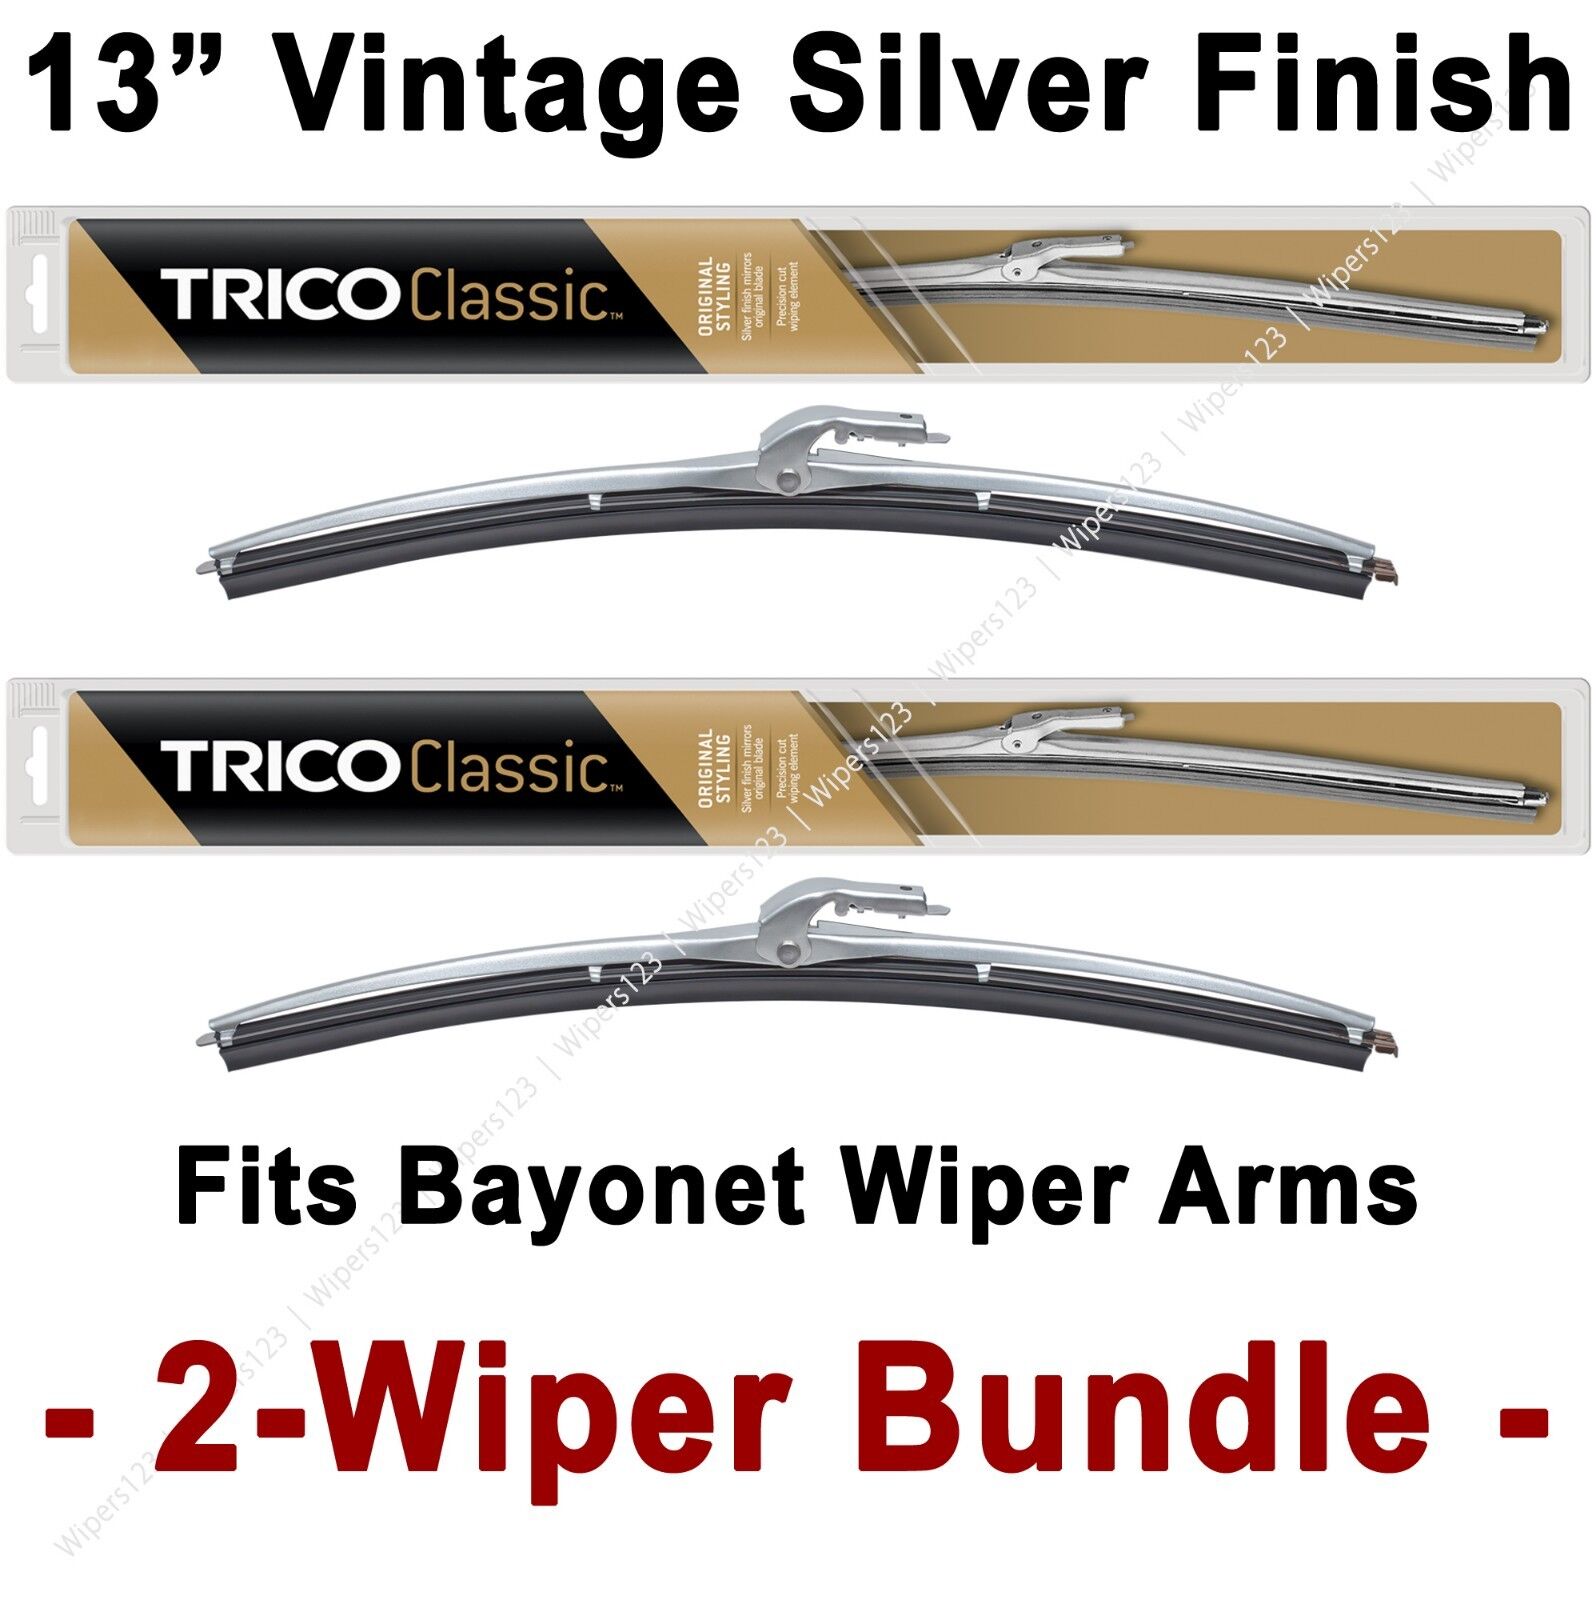 2-Wiper Bundle: TRICO Classic Wiper Blades 13\